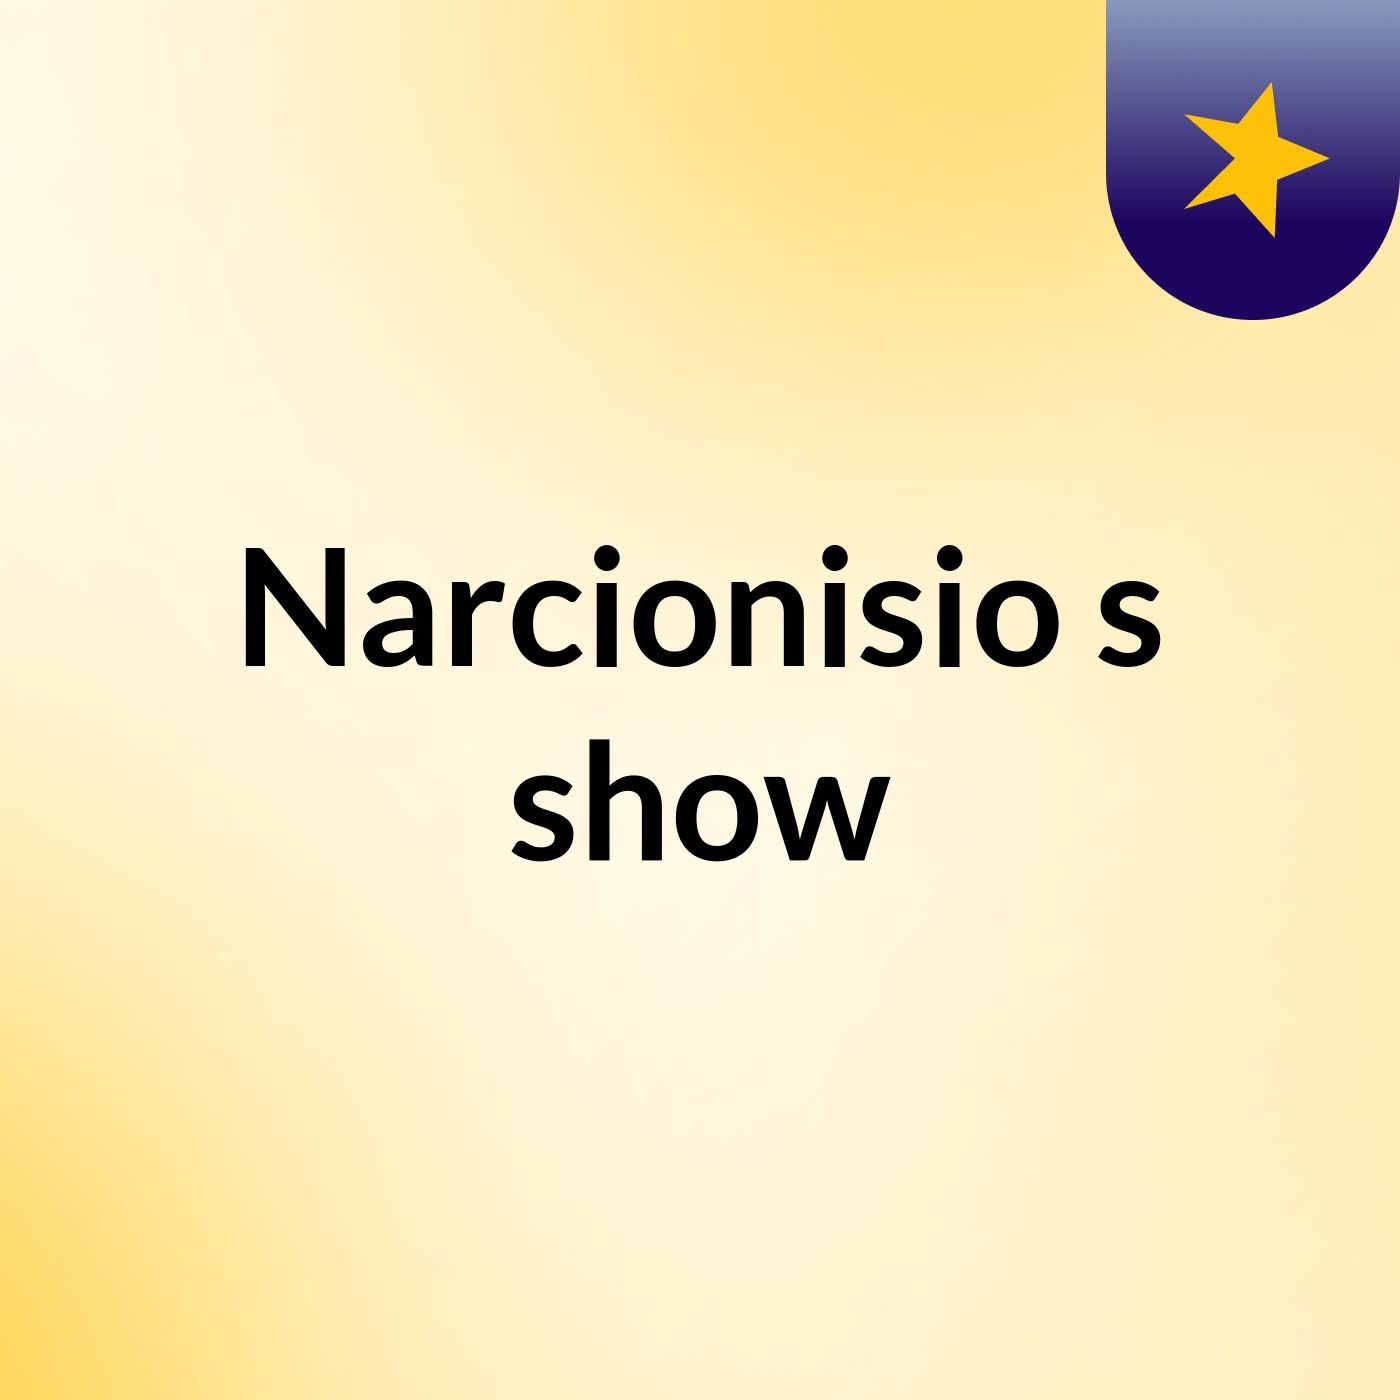 Narcionisio's show